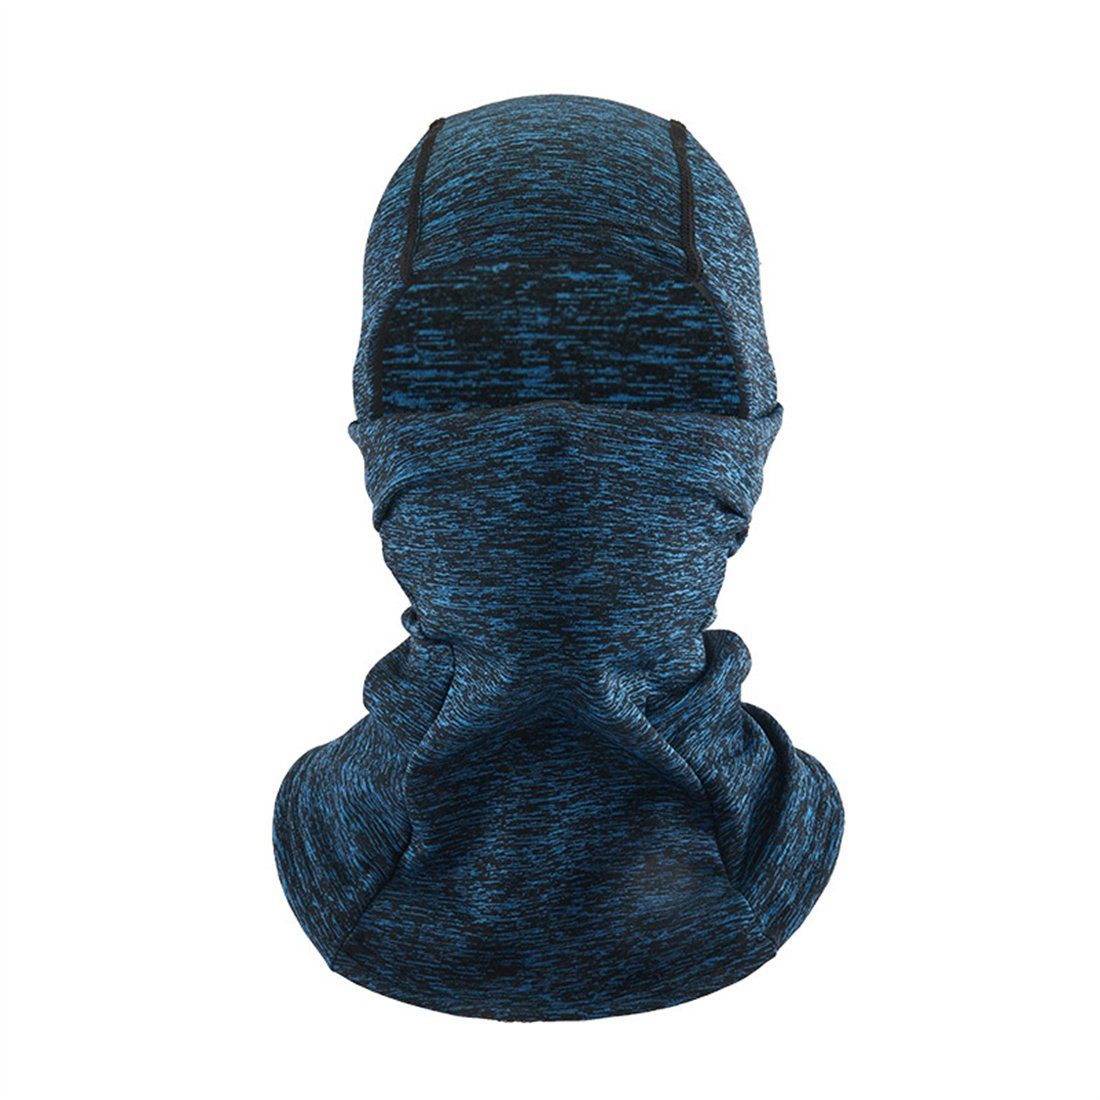 Sturmhaube blau Kopfbedeckung, warme Ski kalte Winter Radfahren Maske, unisex DÖRÖY